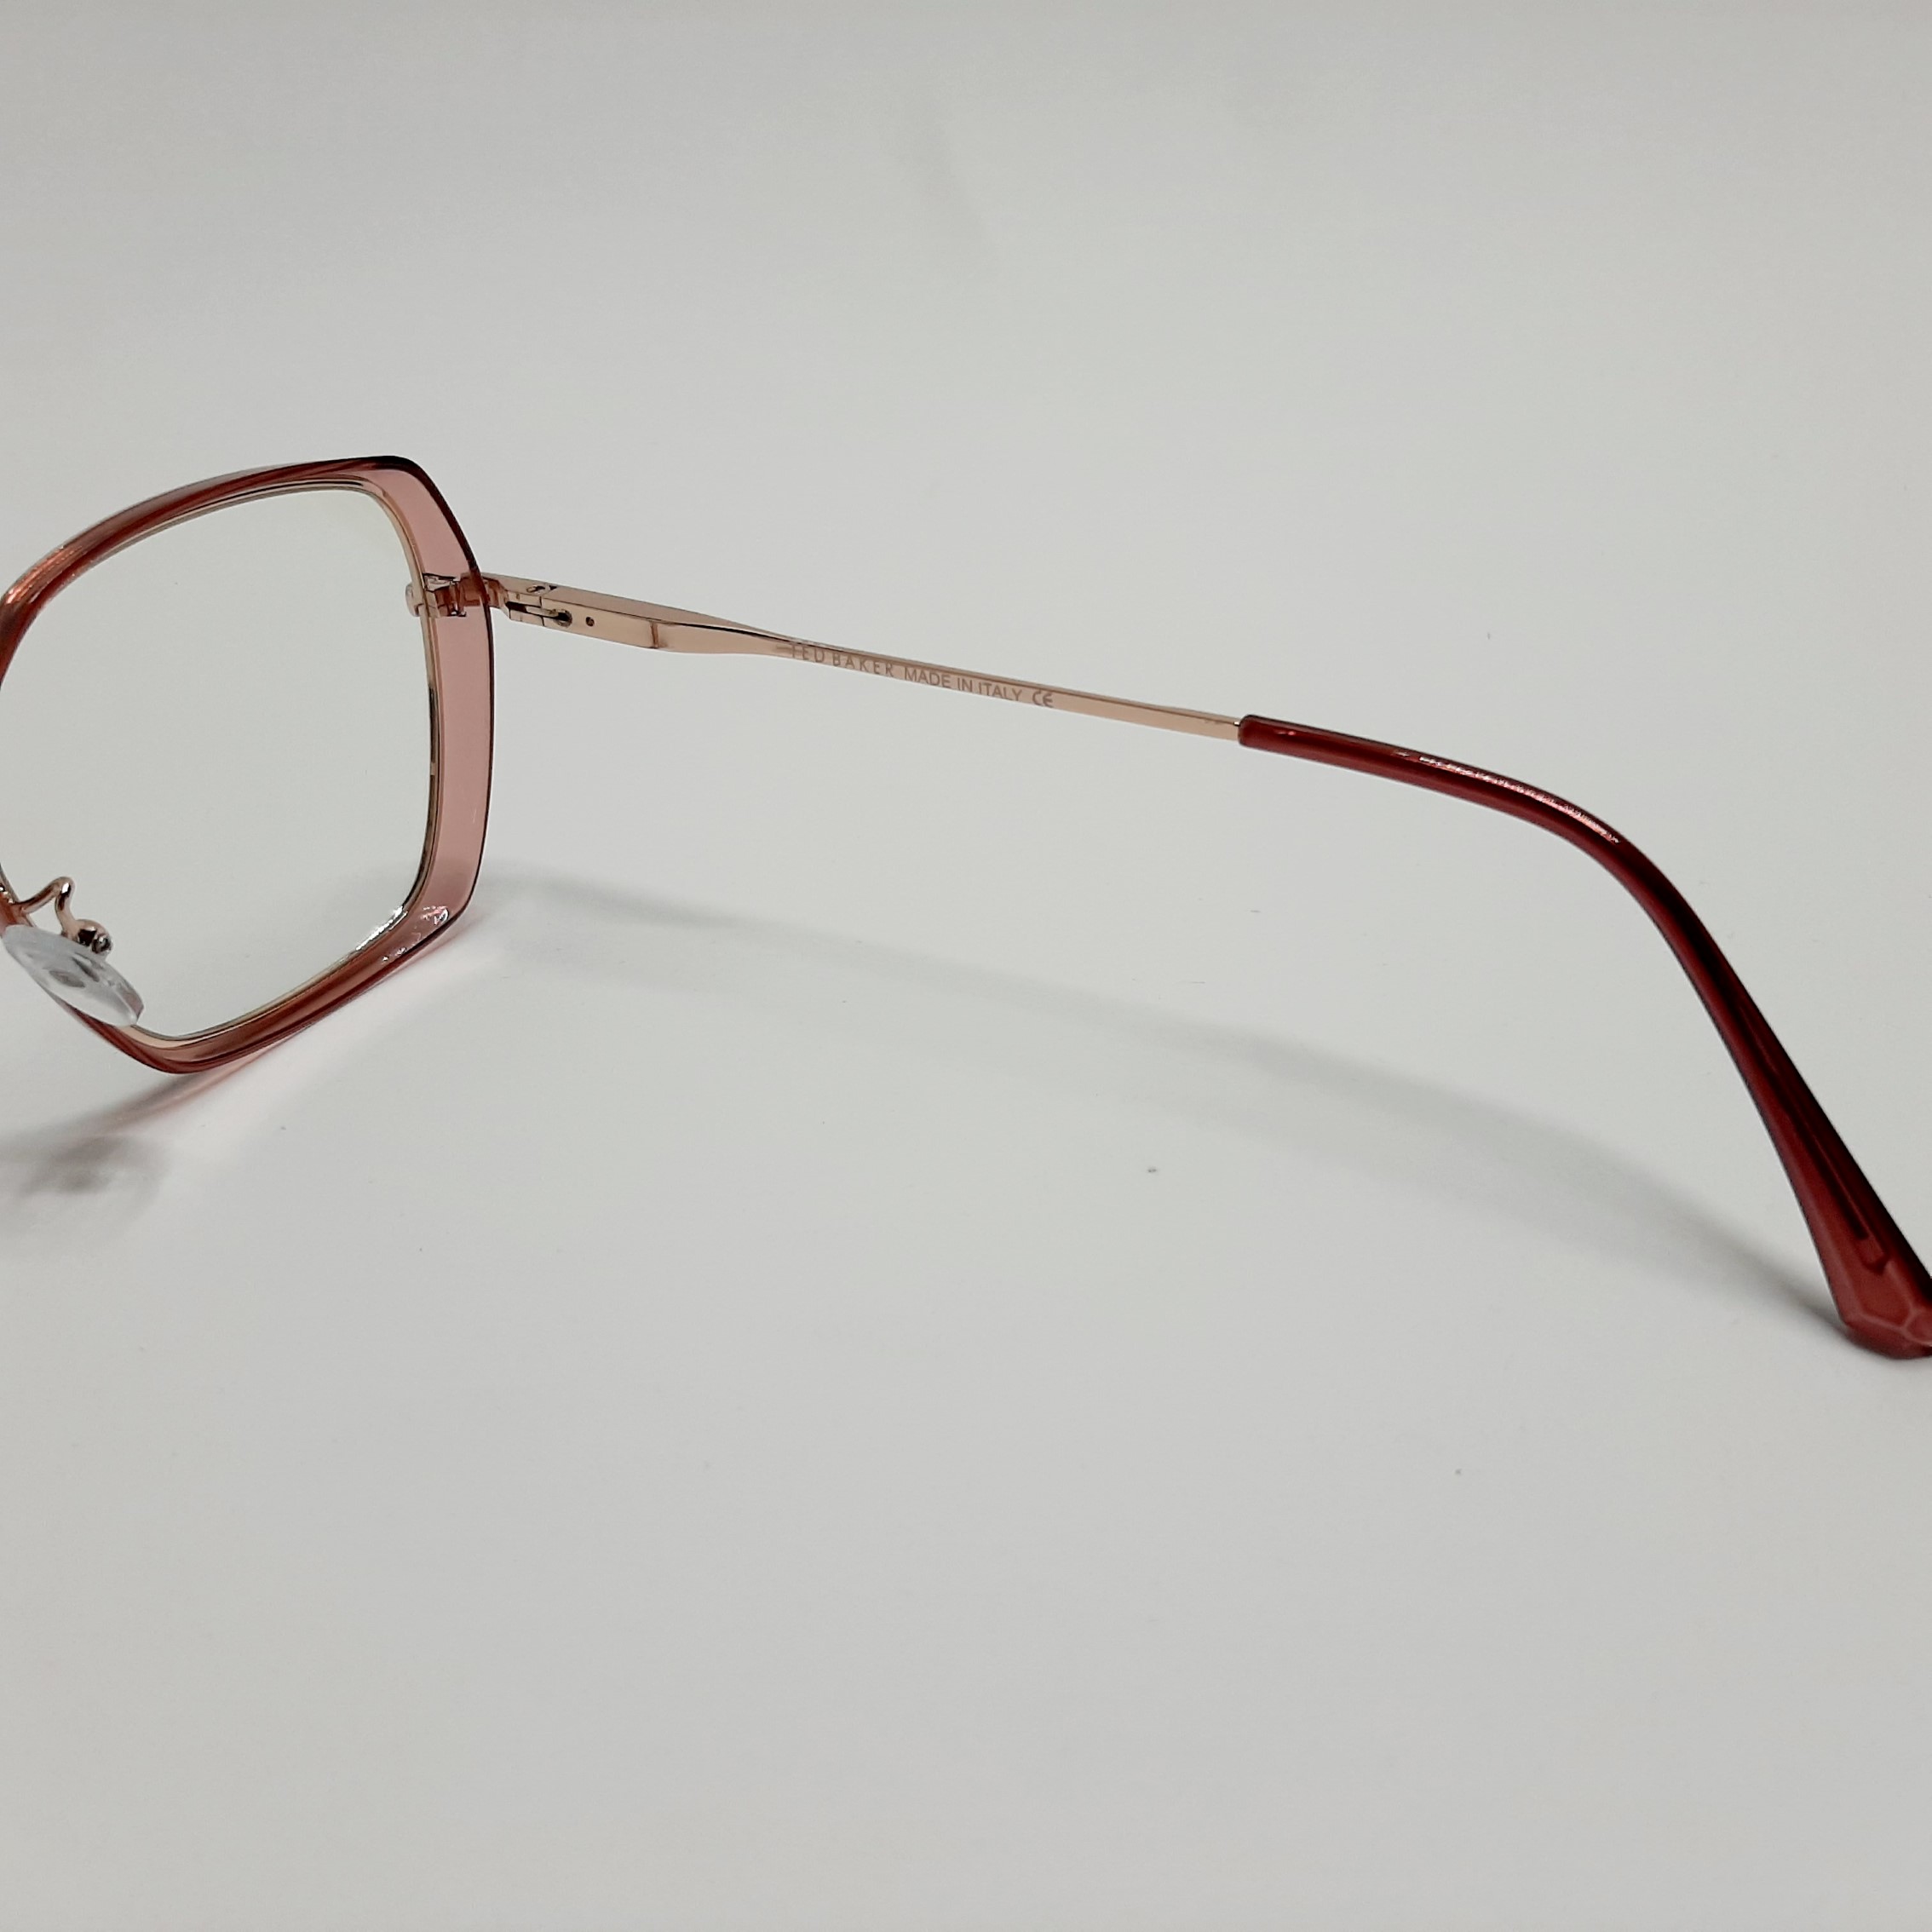 فریم عینک طبی تد بیکر مدل 95583c2 -  - 7